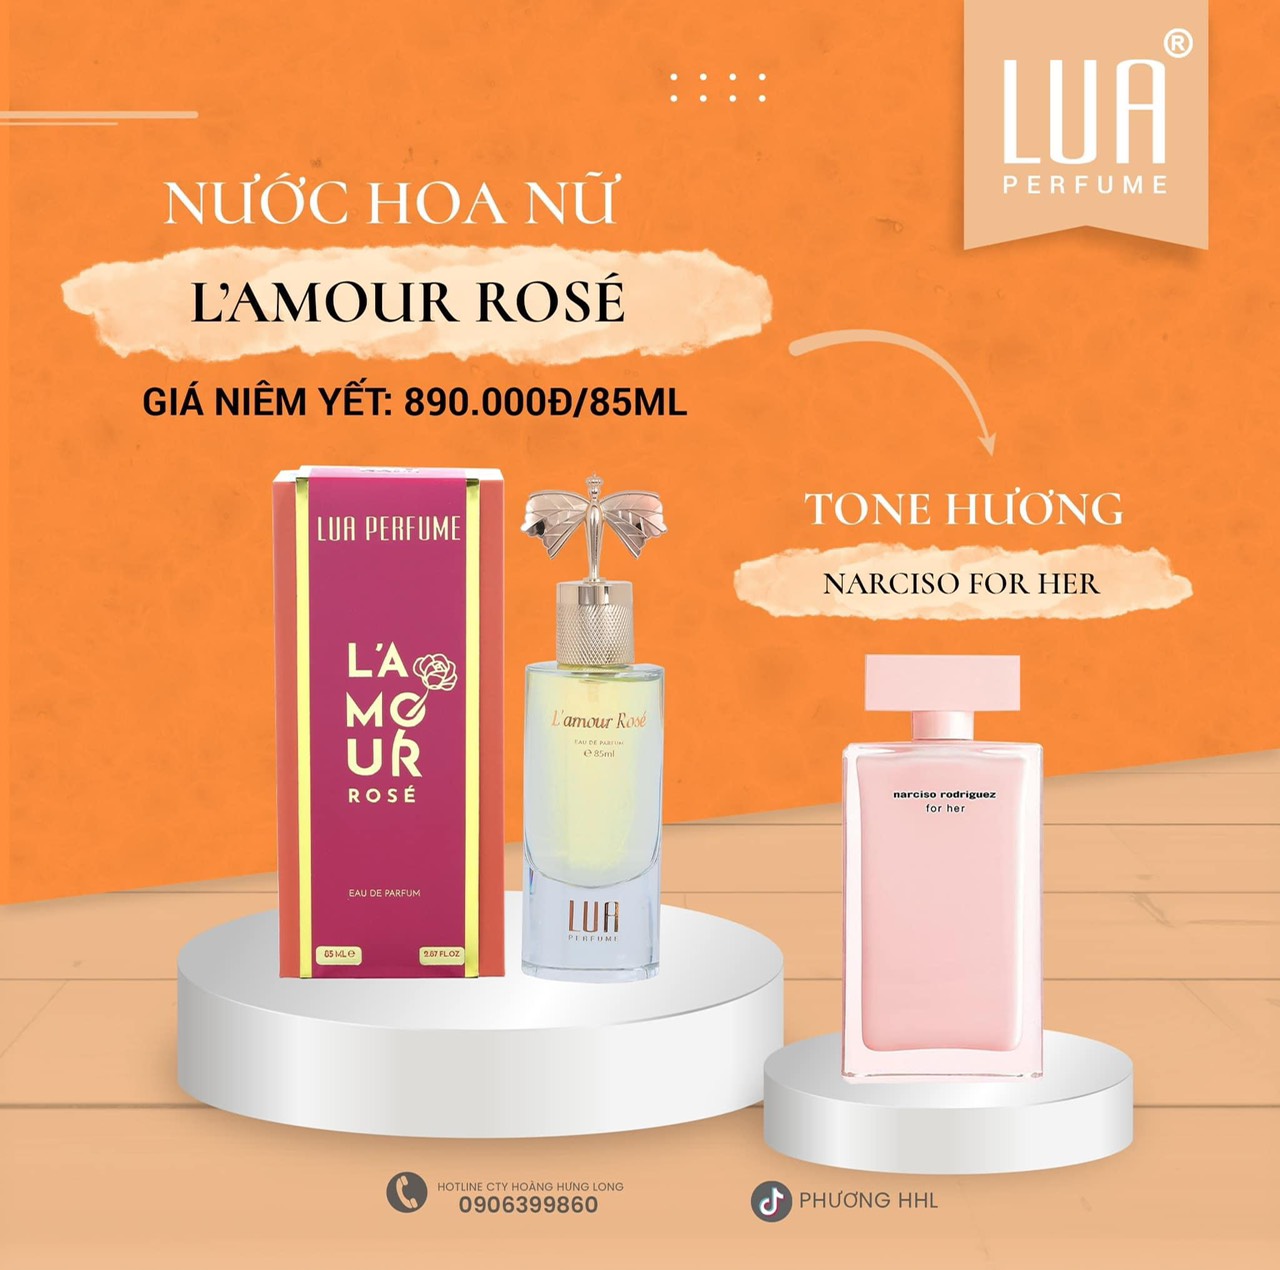 Tổng hợp mùi new best mới nhất ạ Lua Perfume